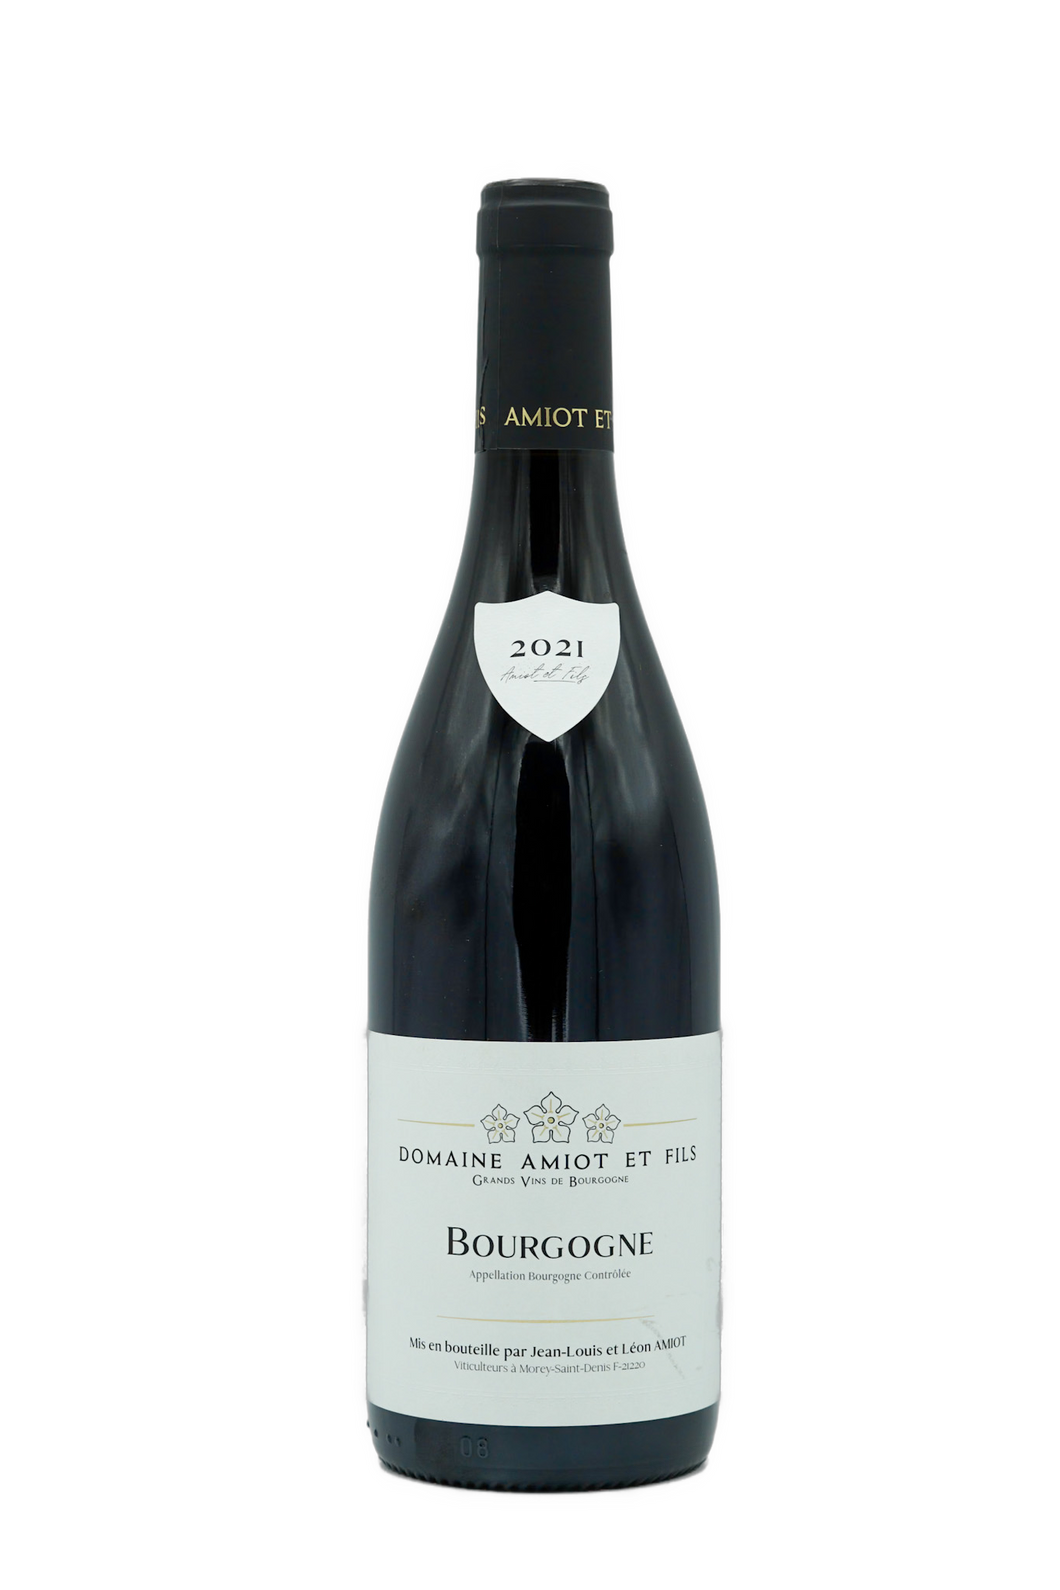 Domaine Amiot et Fils 2021 Bourgogne Pinot Noir